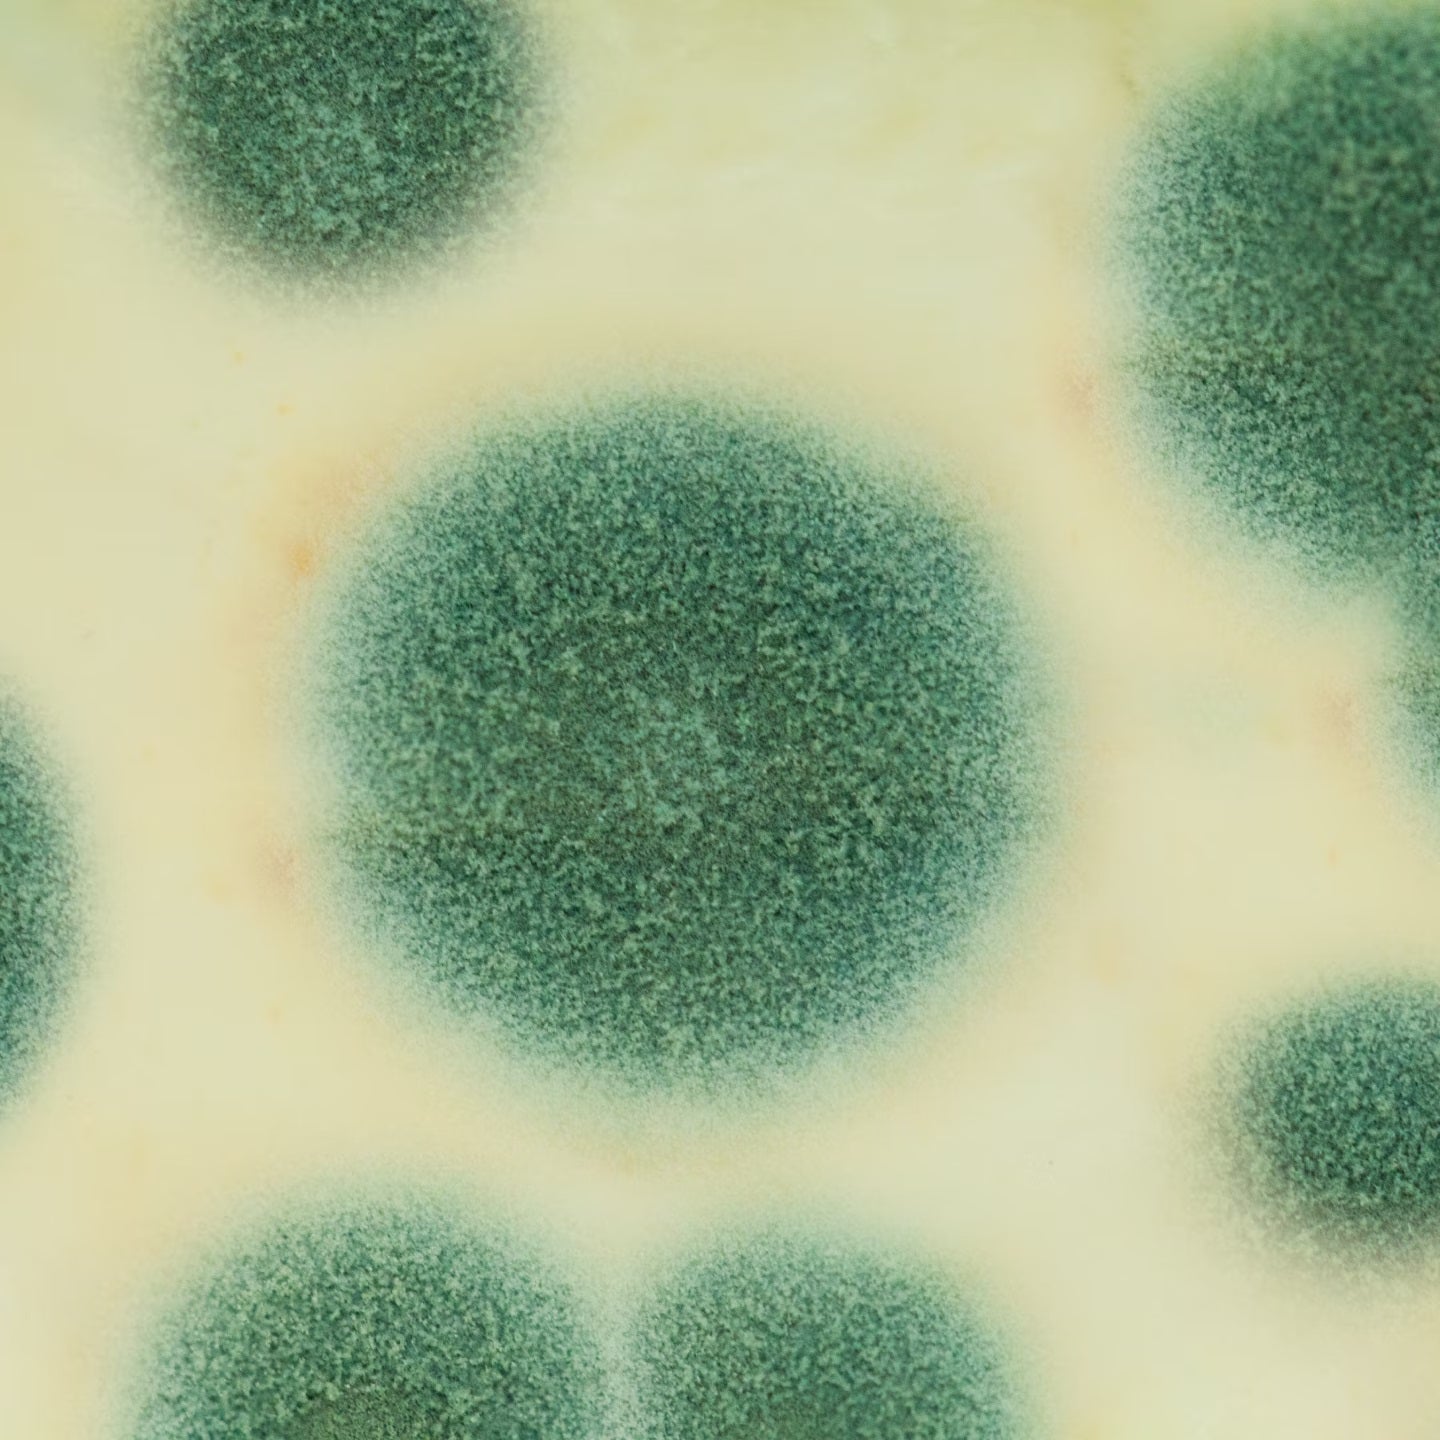 Mold spores under a microscope